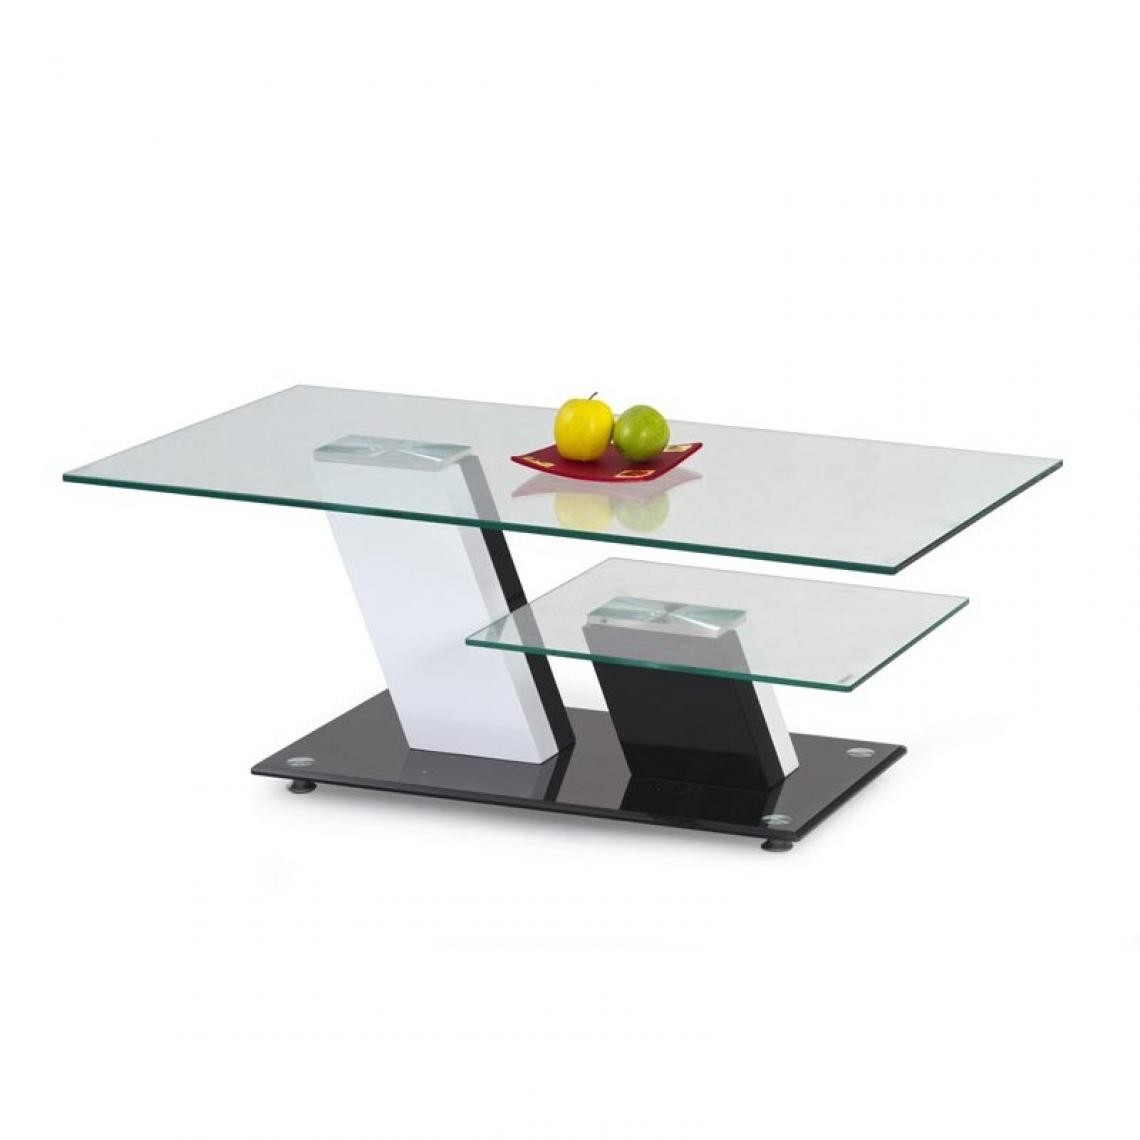 Carellia - Table basse design 110 cm x 60 cm x 45 cm - Béton/Noir - Tables basses